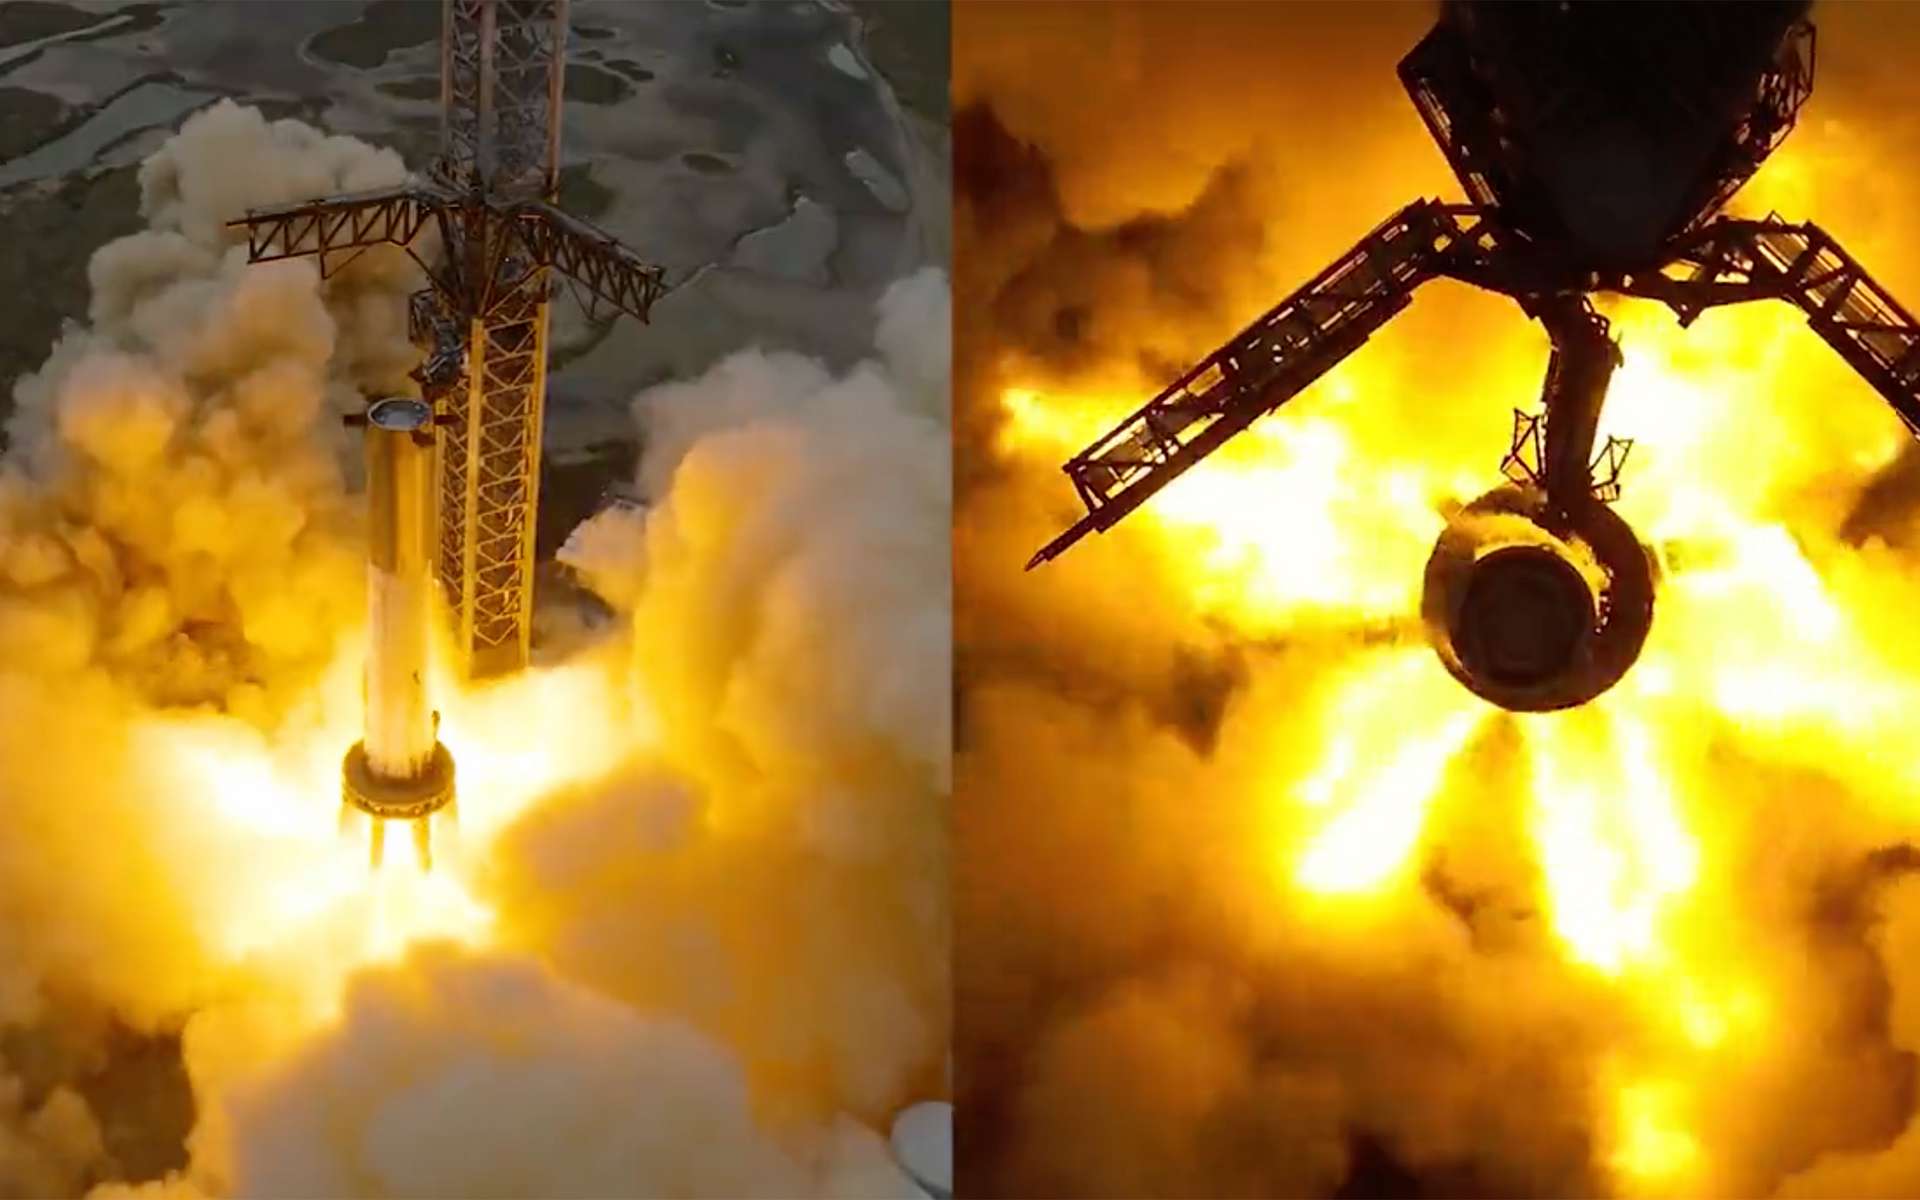 Les 33 moteurs du Starship de SpaceX se sont allumés : comment s'est passé ce test majeur ?